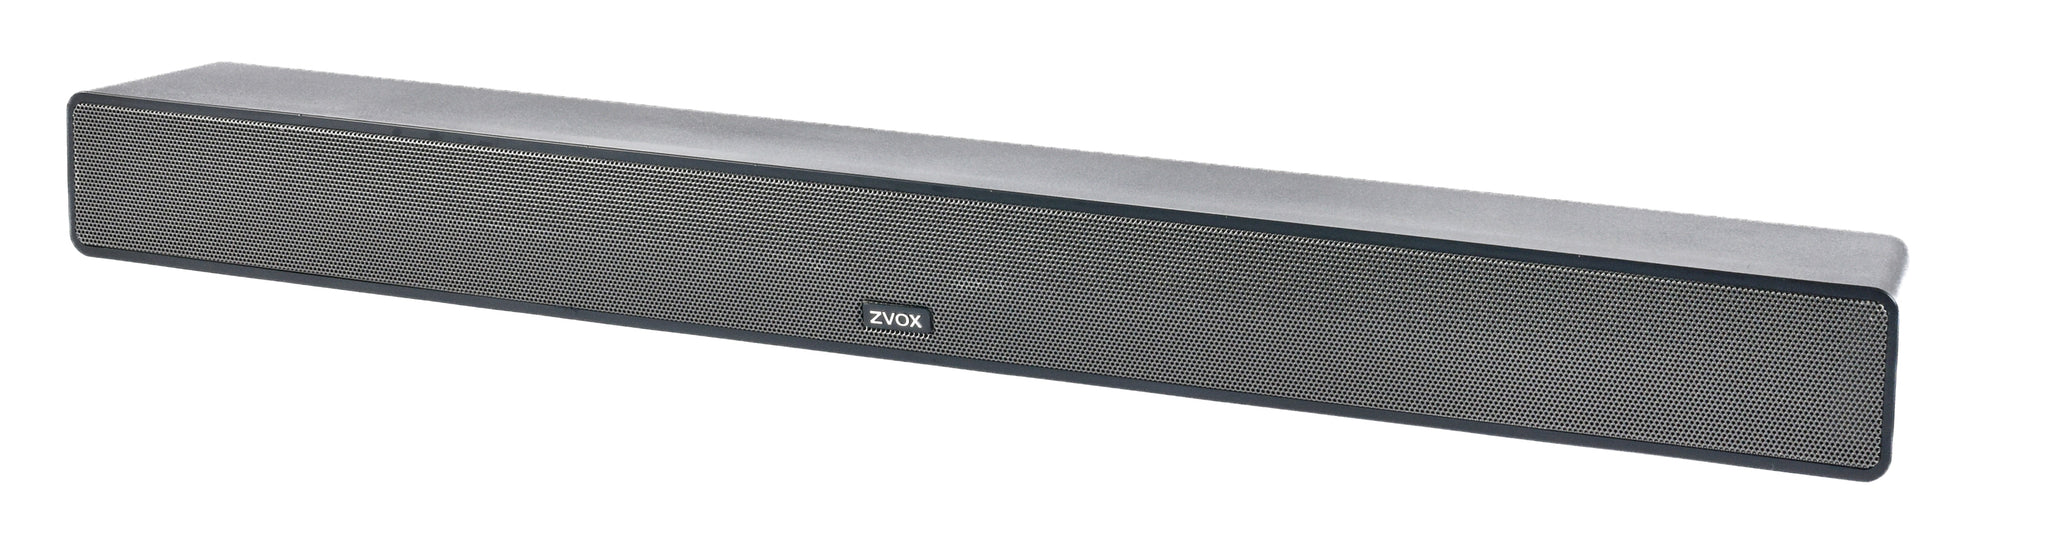 ZVOX AccuVoice AV355 Low-Profile – ZVOX Audio